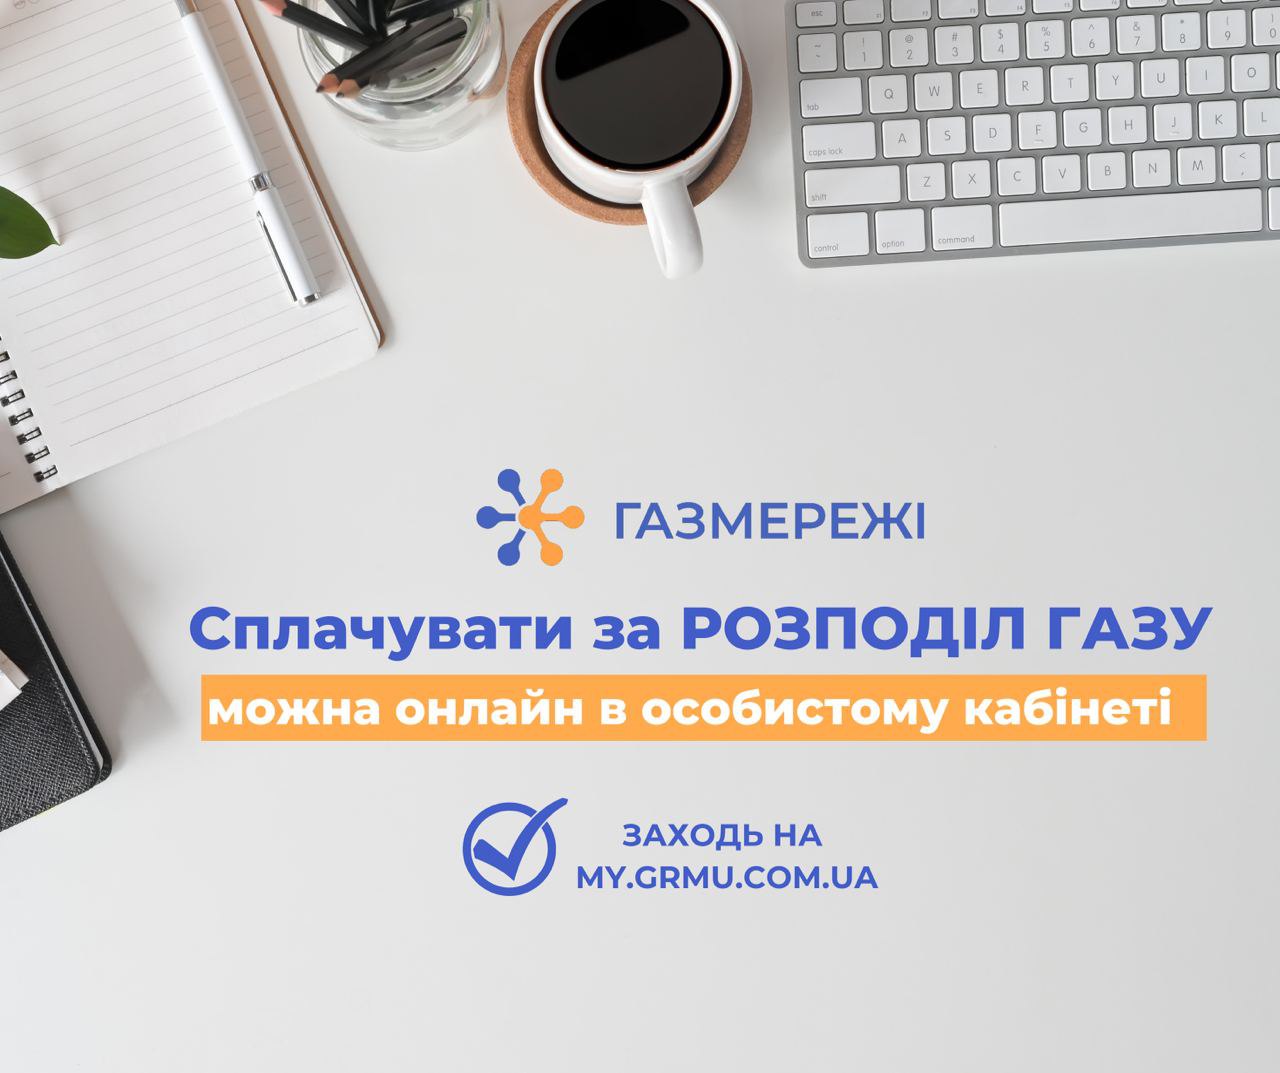 Дніпровська філія «ГАЗМЕРЕЖІ» нагадує своїм клієнтам про необхідність та важливість вчасної оплати за доставку газу!